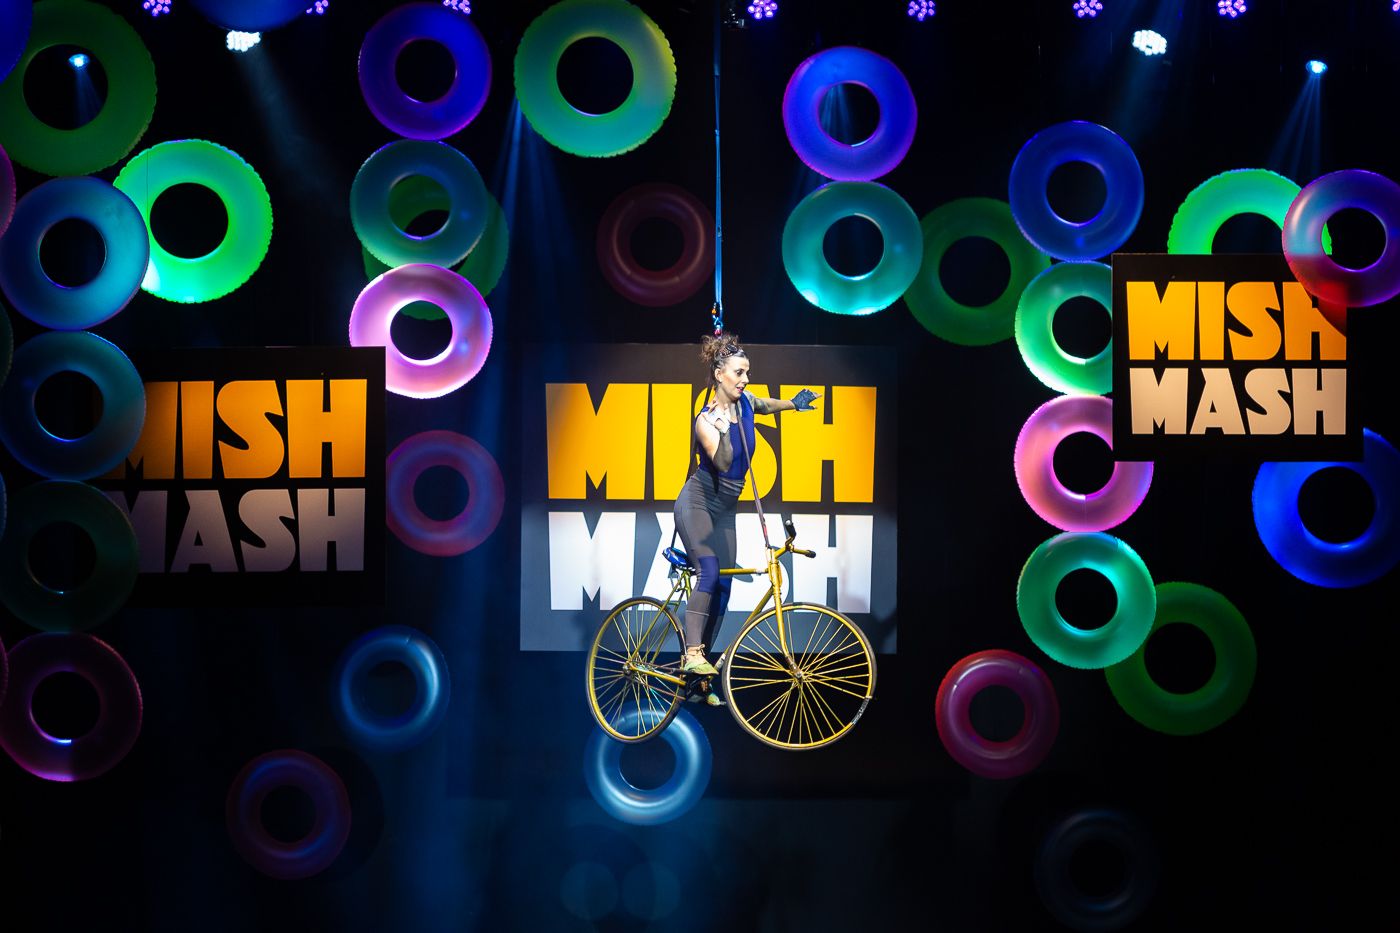 MishMash apresenta show especial gratuito com várias atrações pelo YouTube